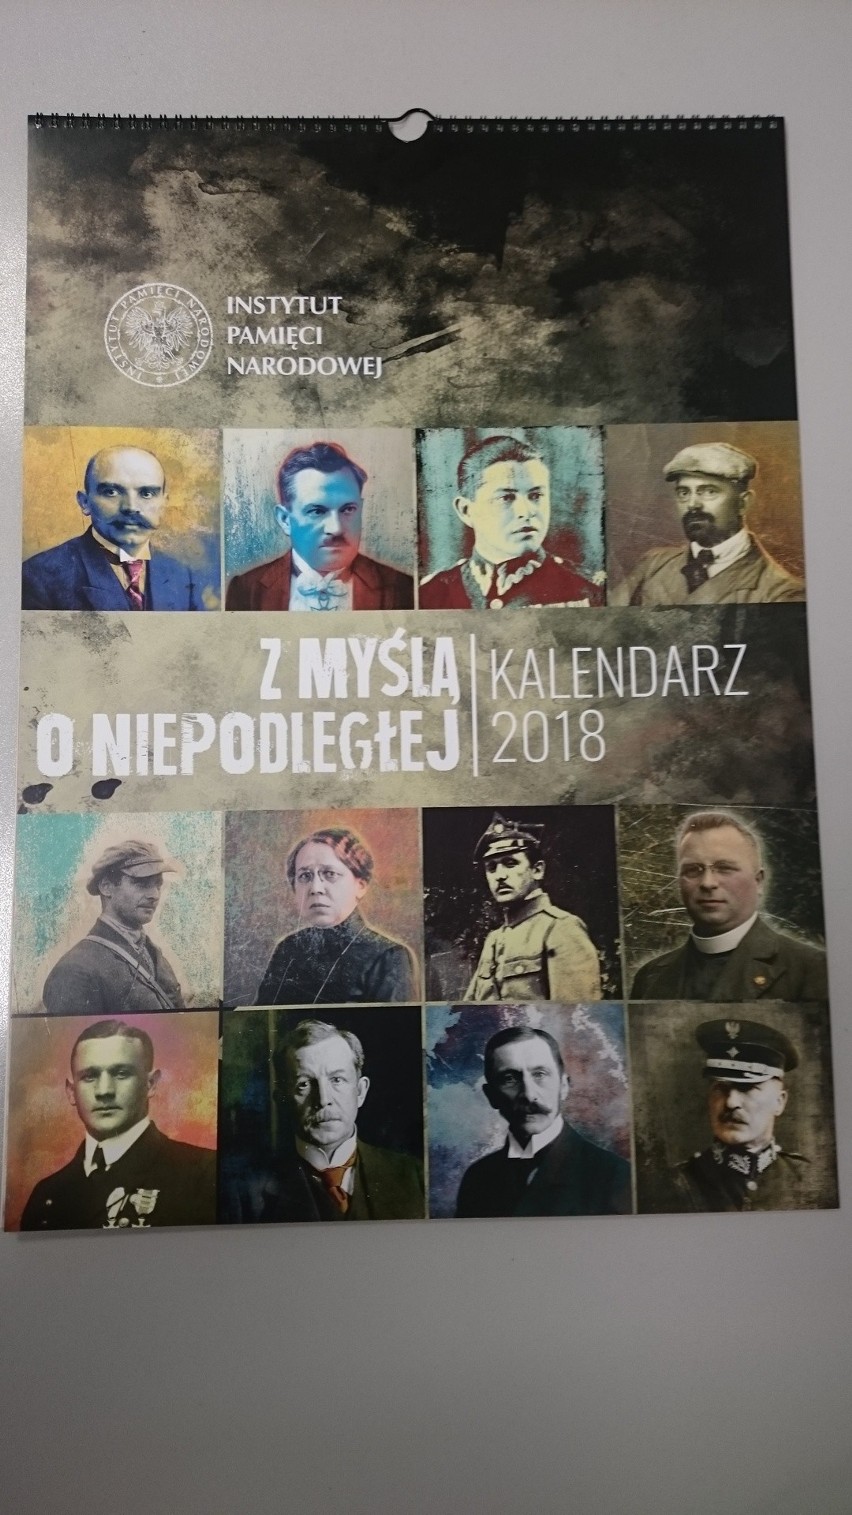 Kalendarz IPN: "Z myślą o niepodległej" na 100-lecie odzyskania niepodległości 